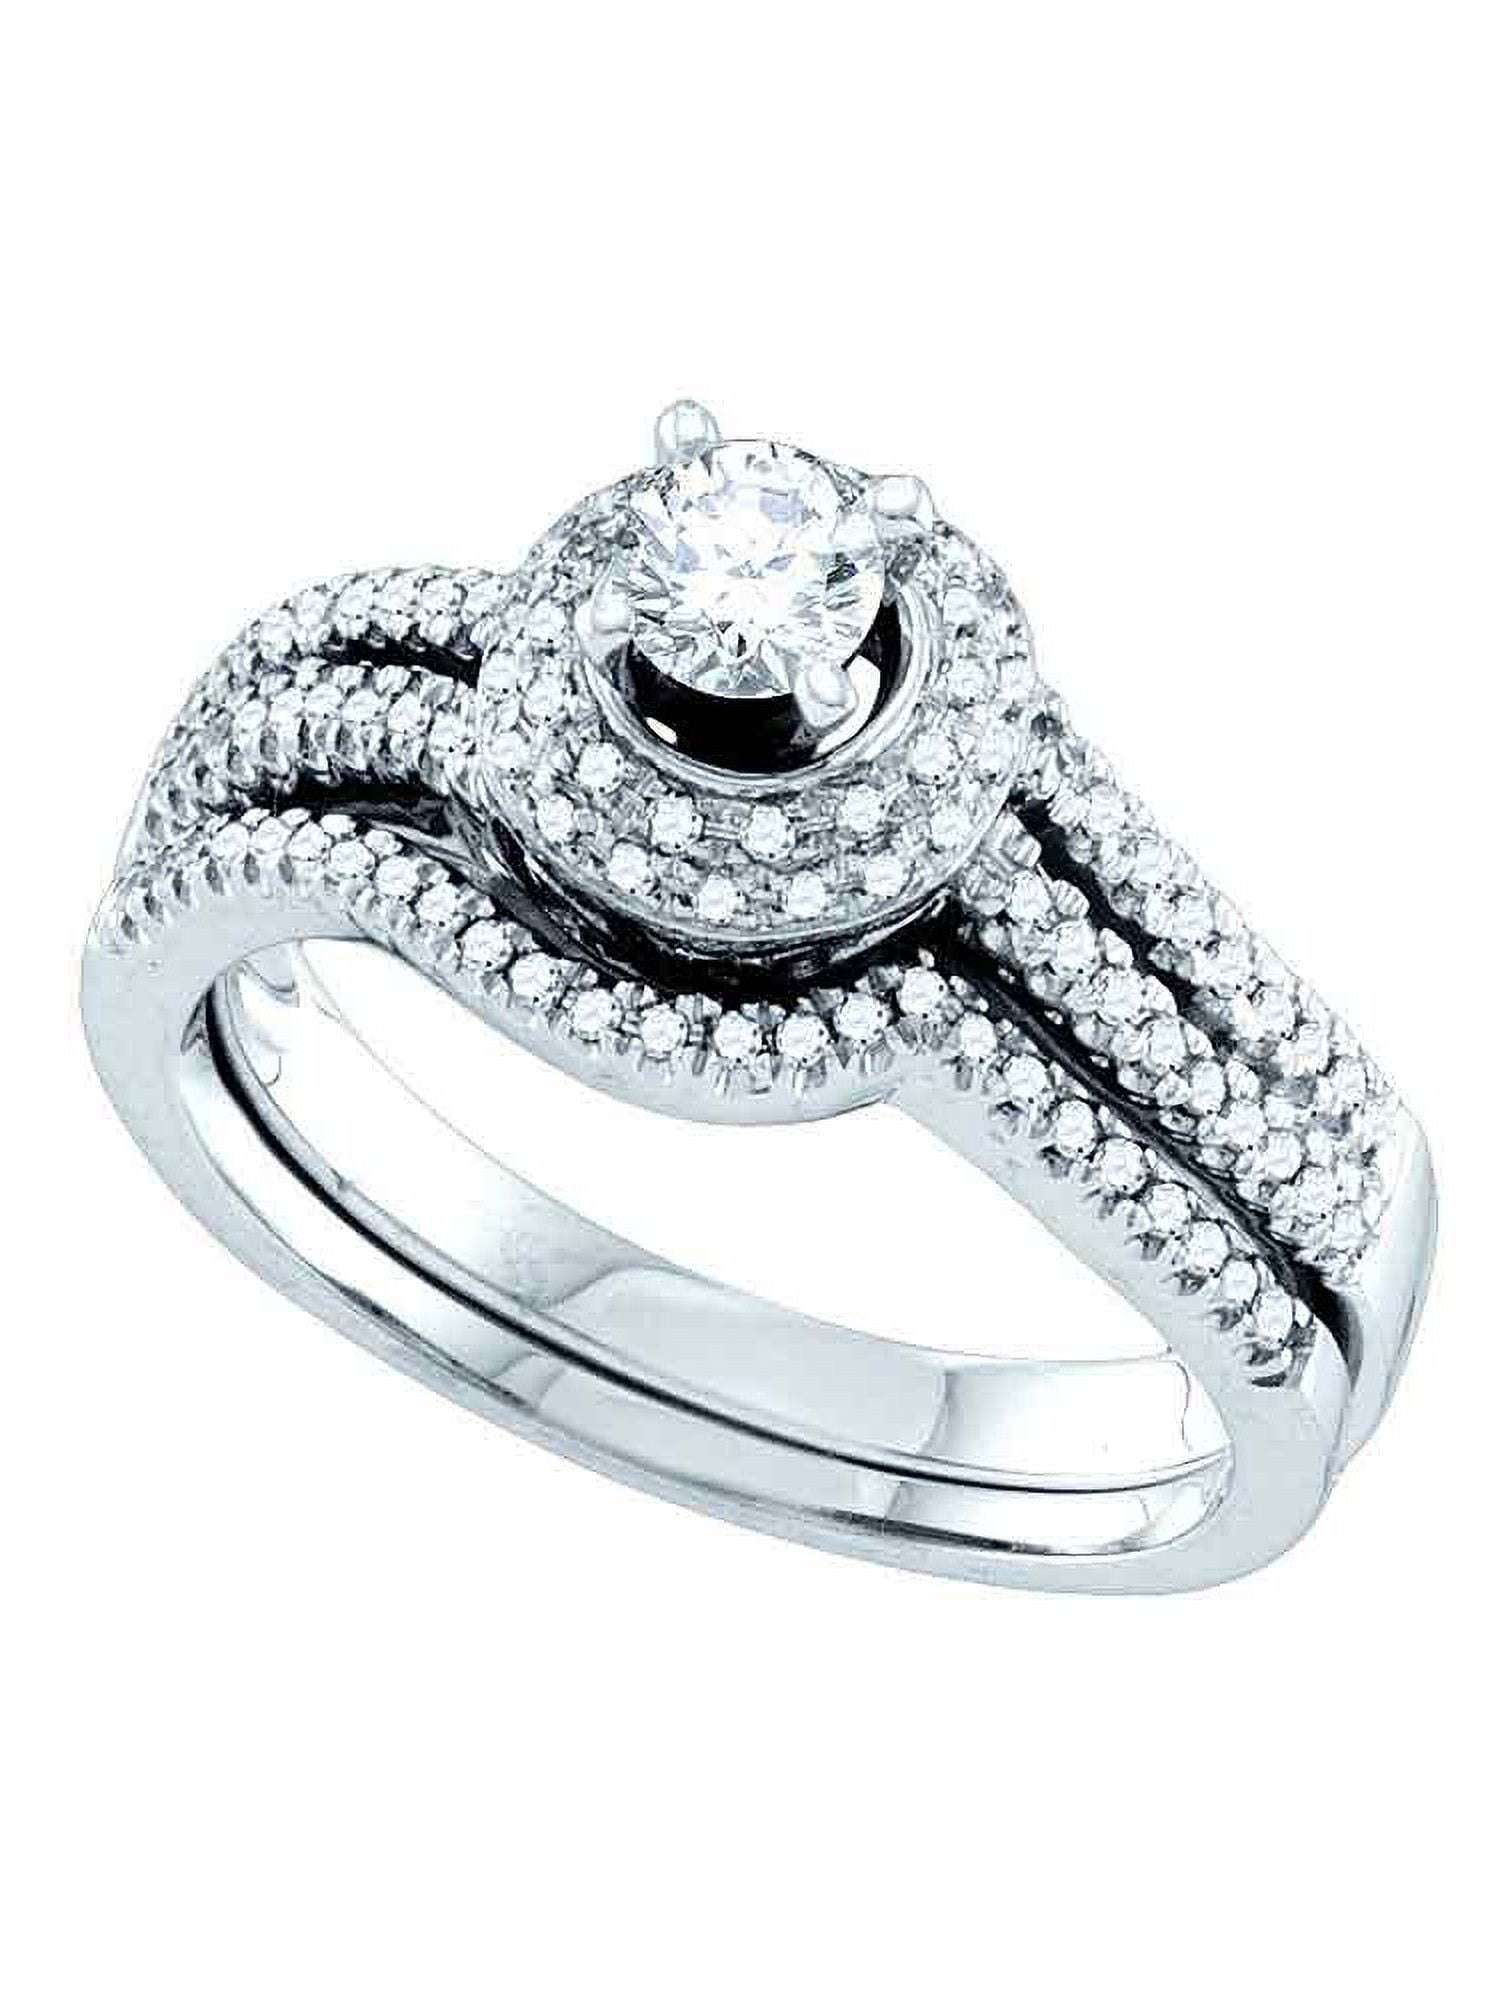 Size 8 - 14k White Gold Round Diamond Bridal Wedding Engagement Ring ...